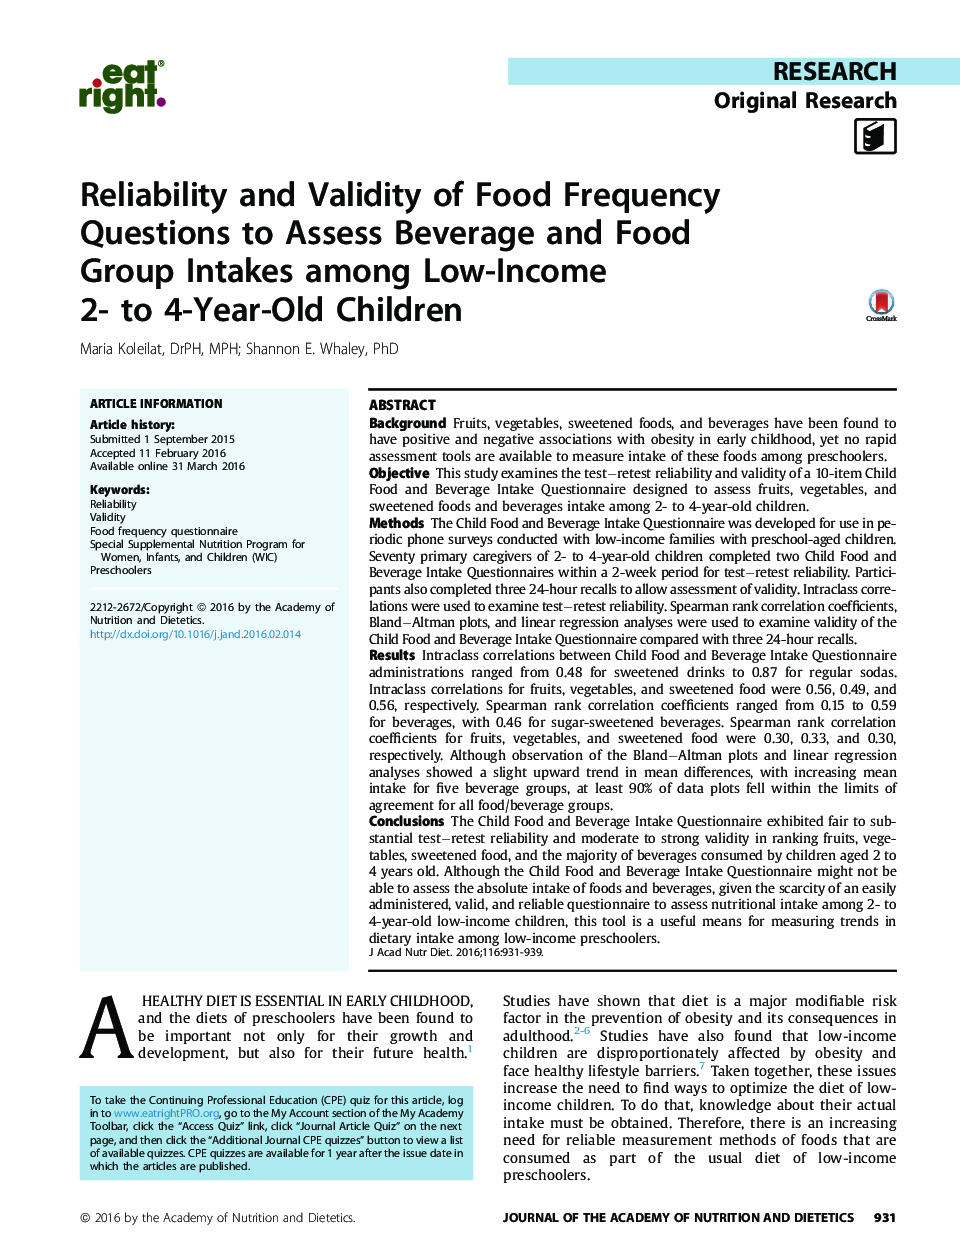 اعتبار و قابلیت اطمینان سؤالات فرکانس غذایی برای ارزیابی میزان مصرف مواد غذایی و گروه غذایی در میان کودکان 2 تا 4 ساله کم درآمد